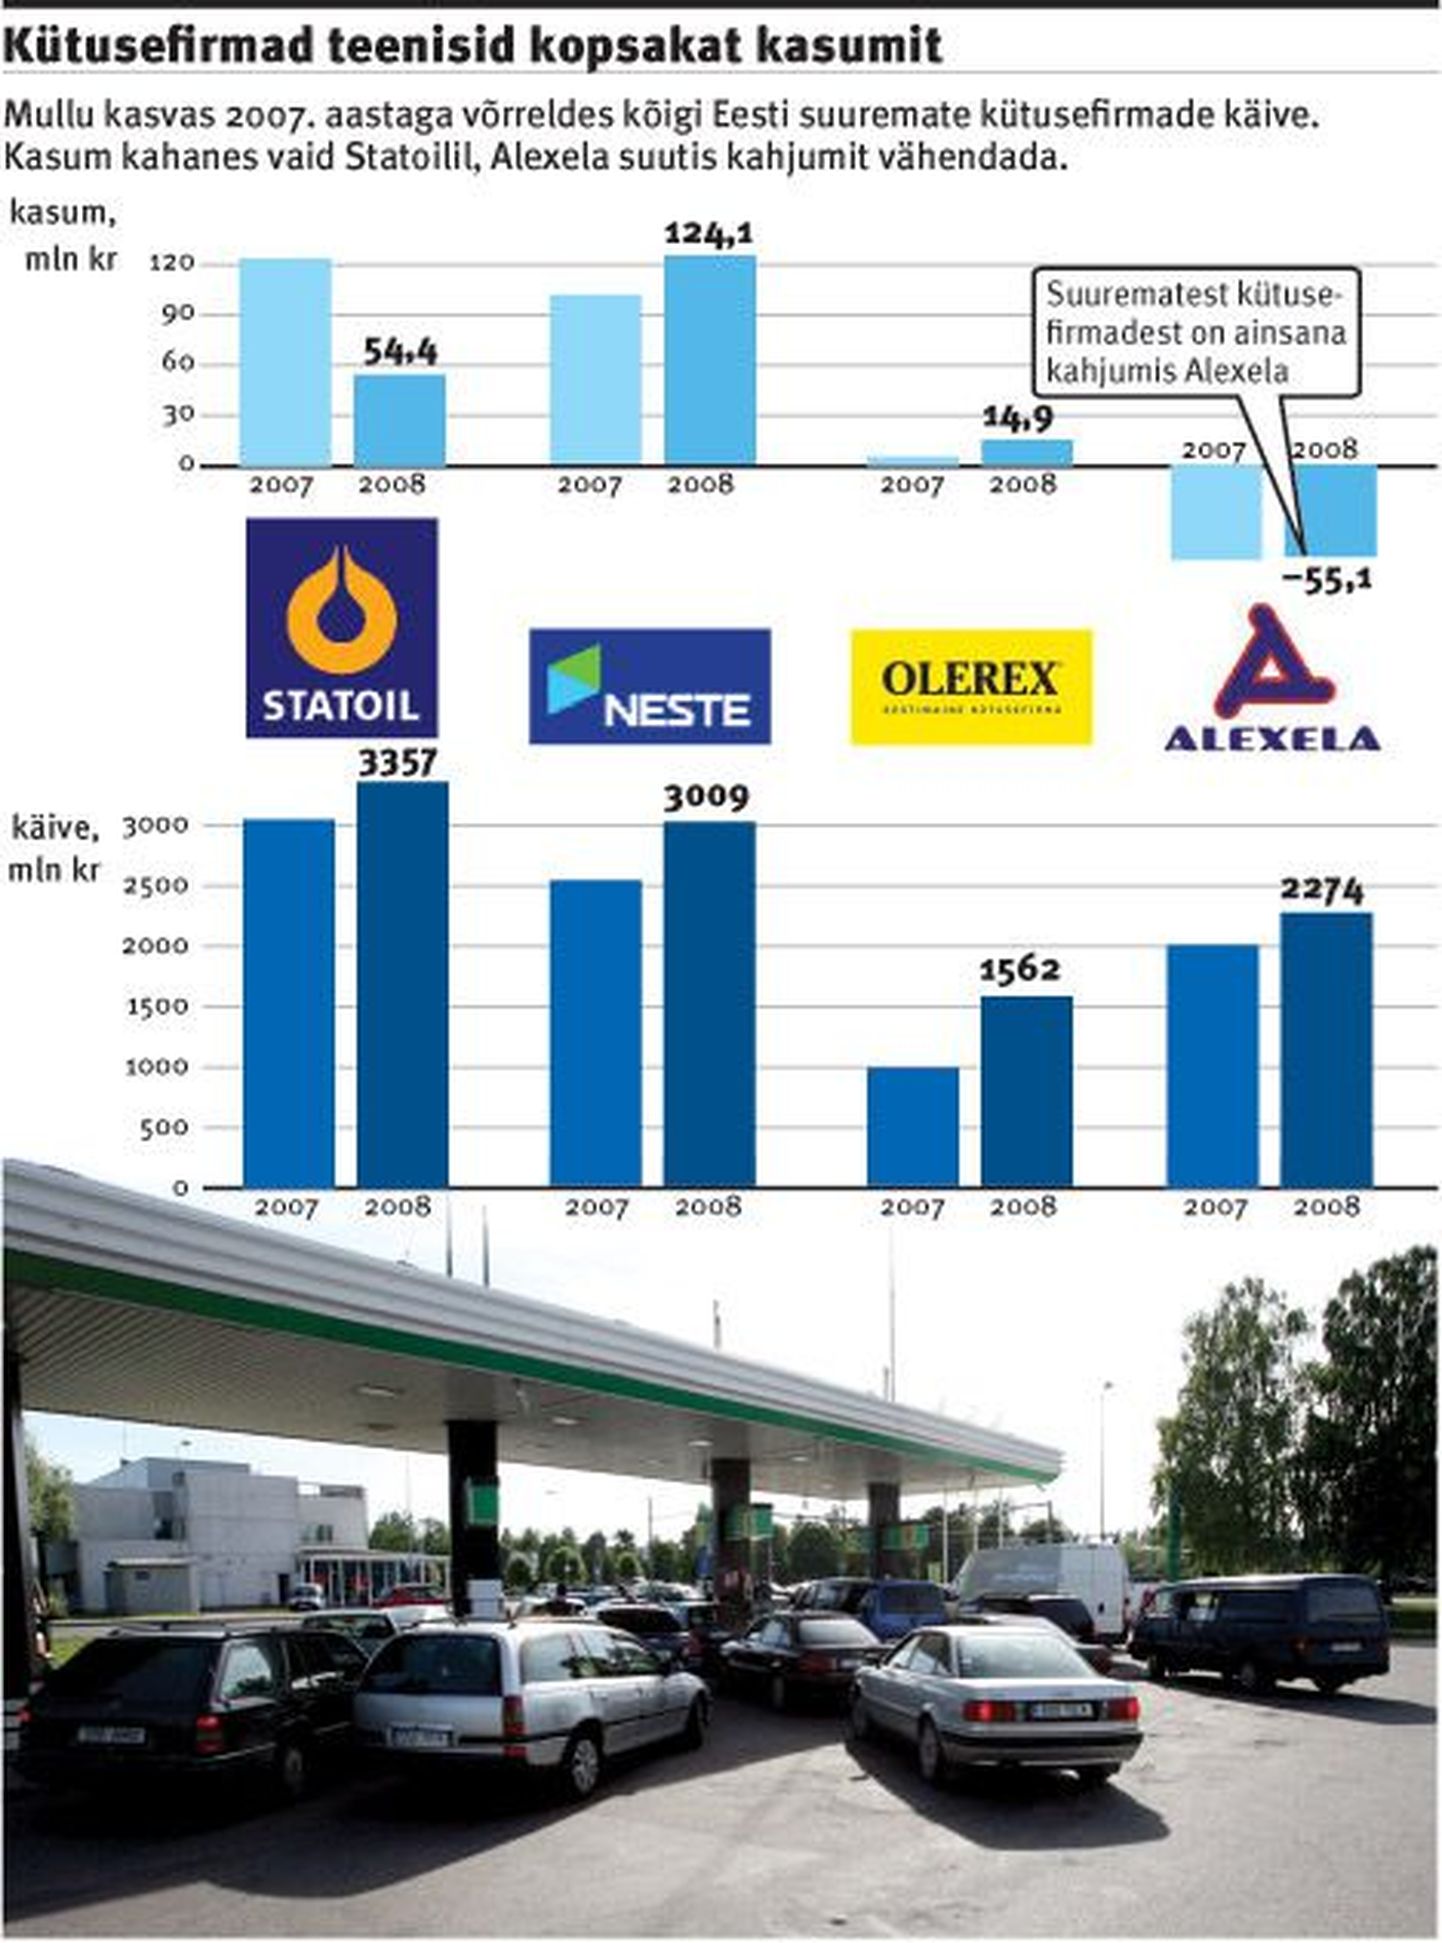 Kütusefirmad teenisid kopsakat kasumit.